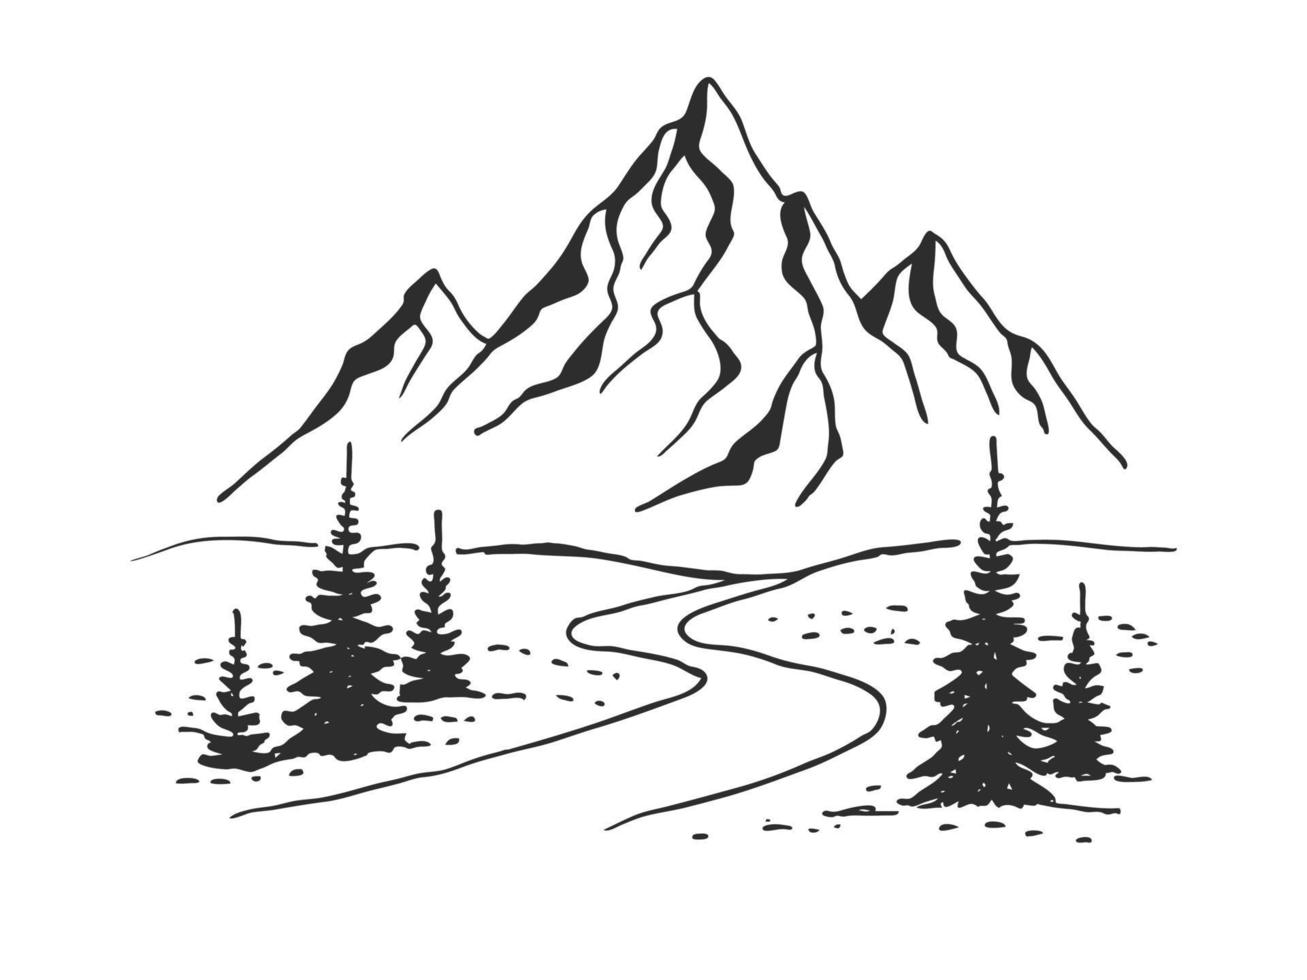 bergen weg. landschap zwart op een witte achtergrond. hand getrokken rotsachtige toppen in schetsstijl. vector illustratie